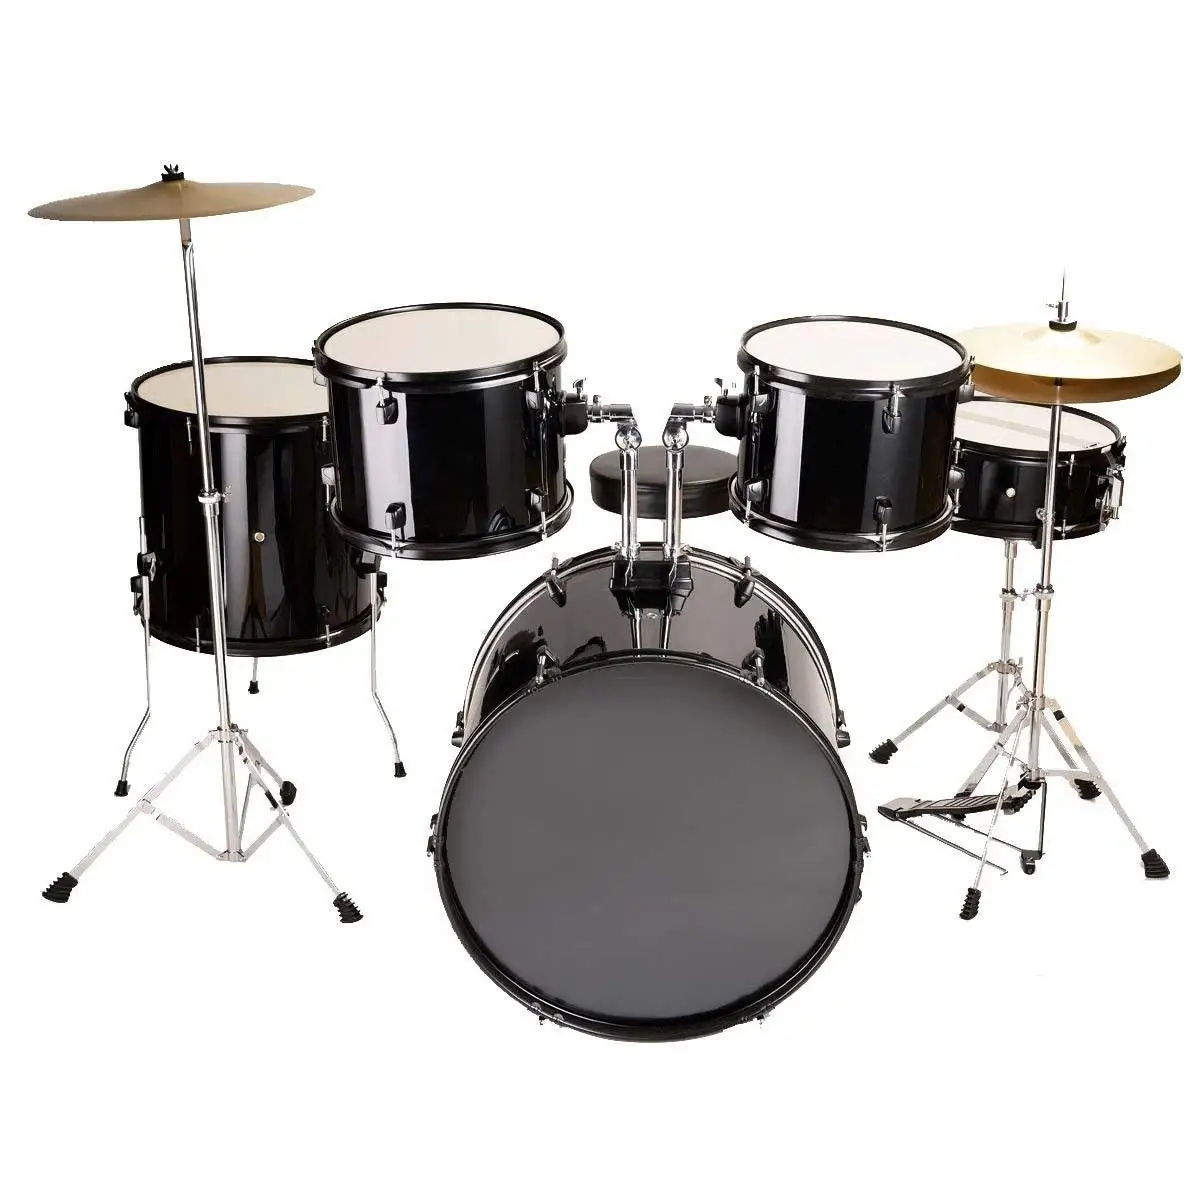 reddit drum kits all johnny juliano drum kits